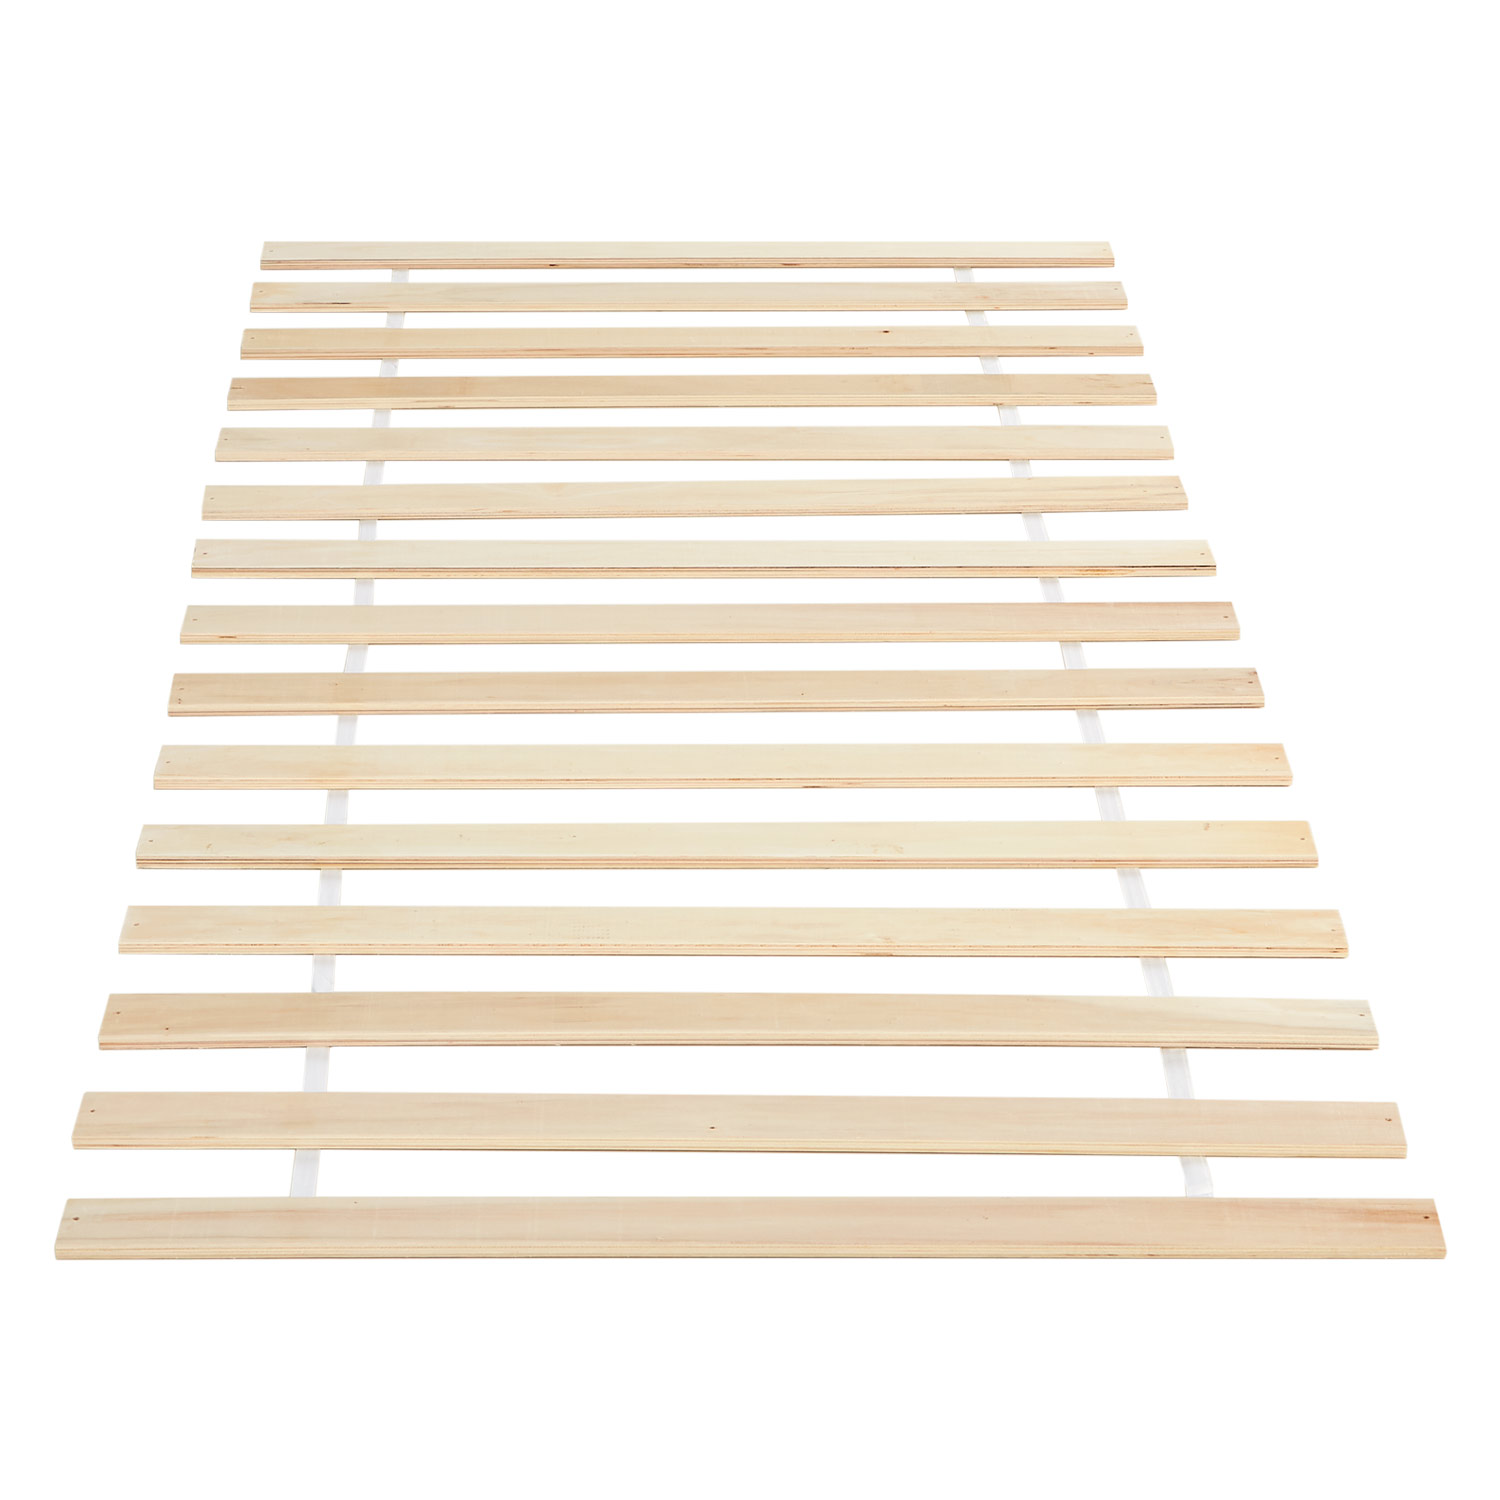 Bed Slats 90x200 cm Wooden Bedroom Slats Solid Pine Wood Slatted Frame